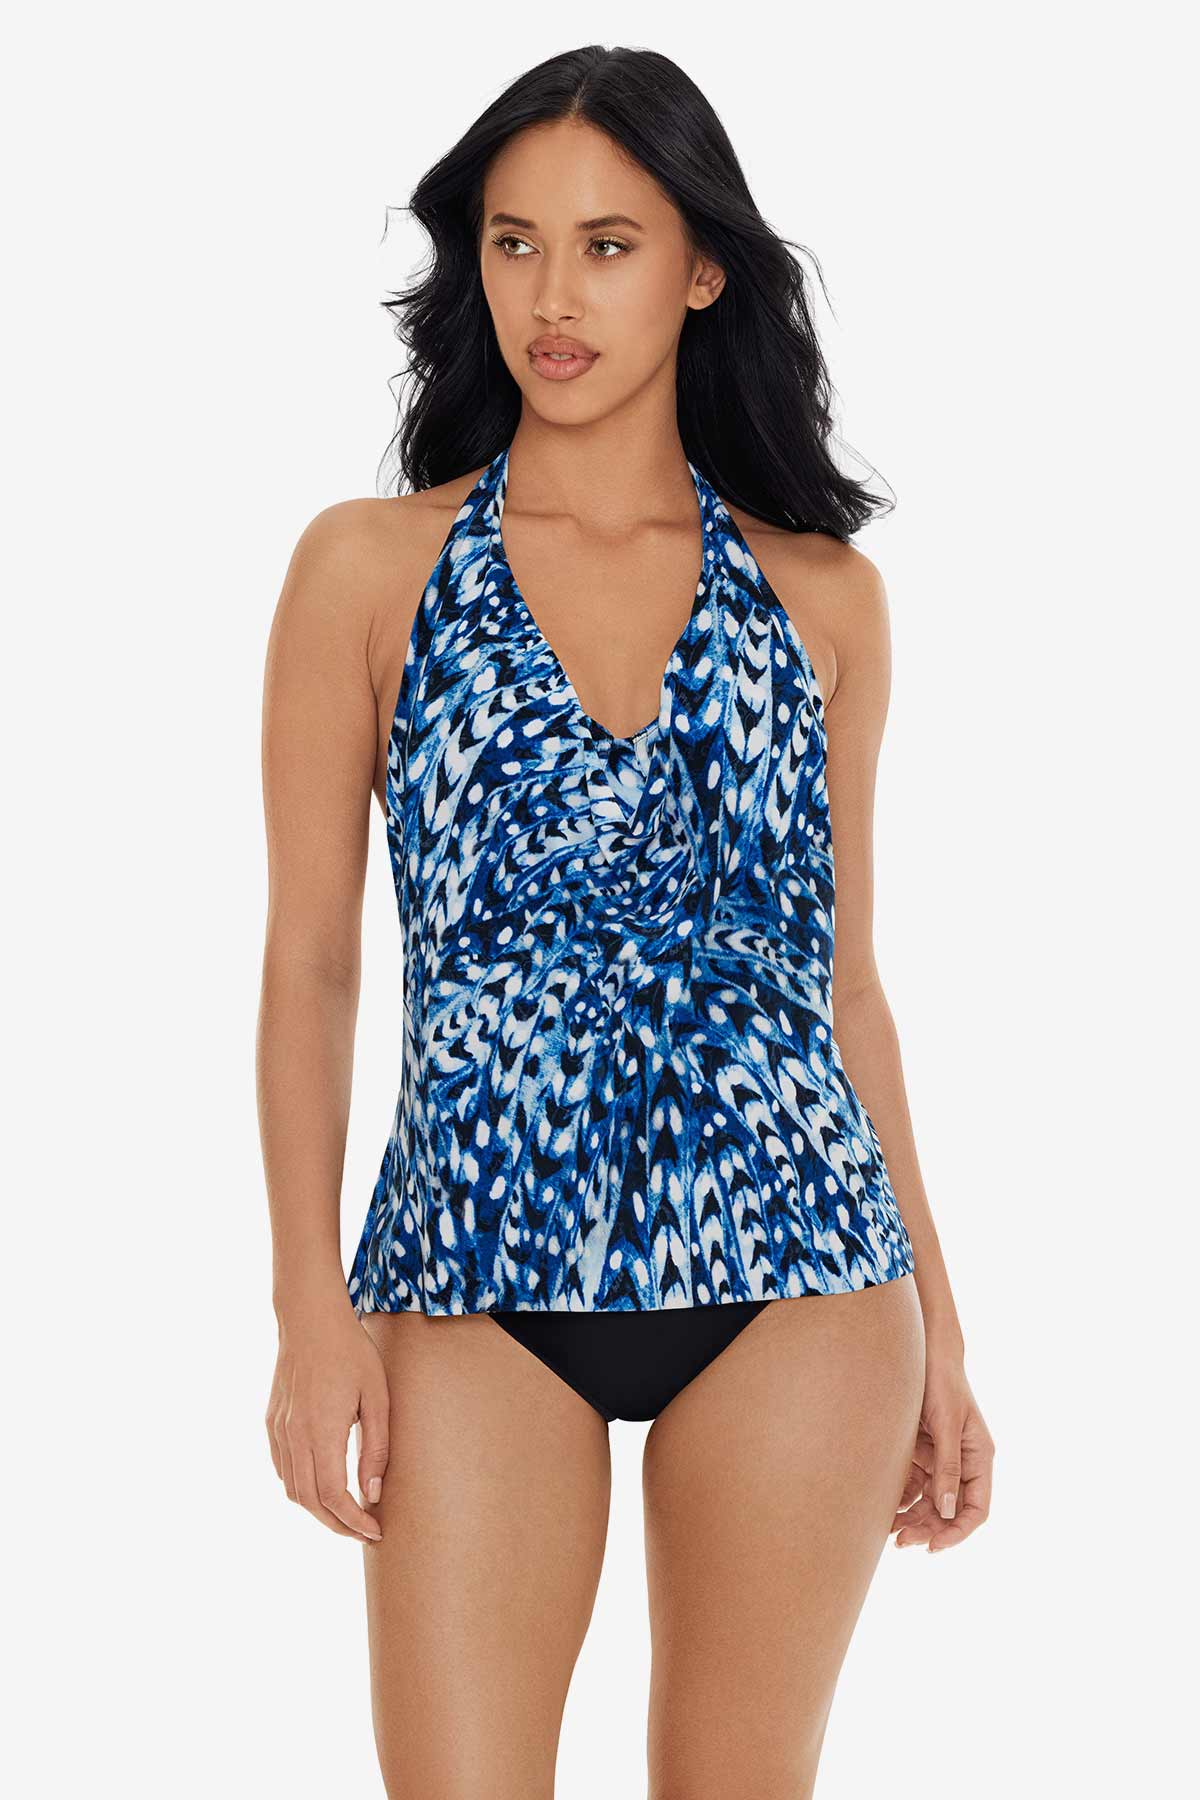 Custom Swimwear  Swim dress with Underwire Bra